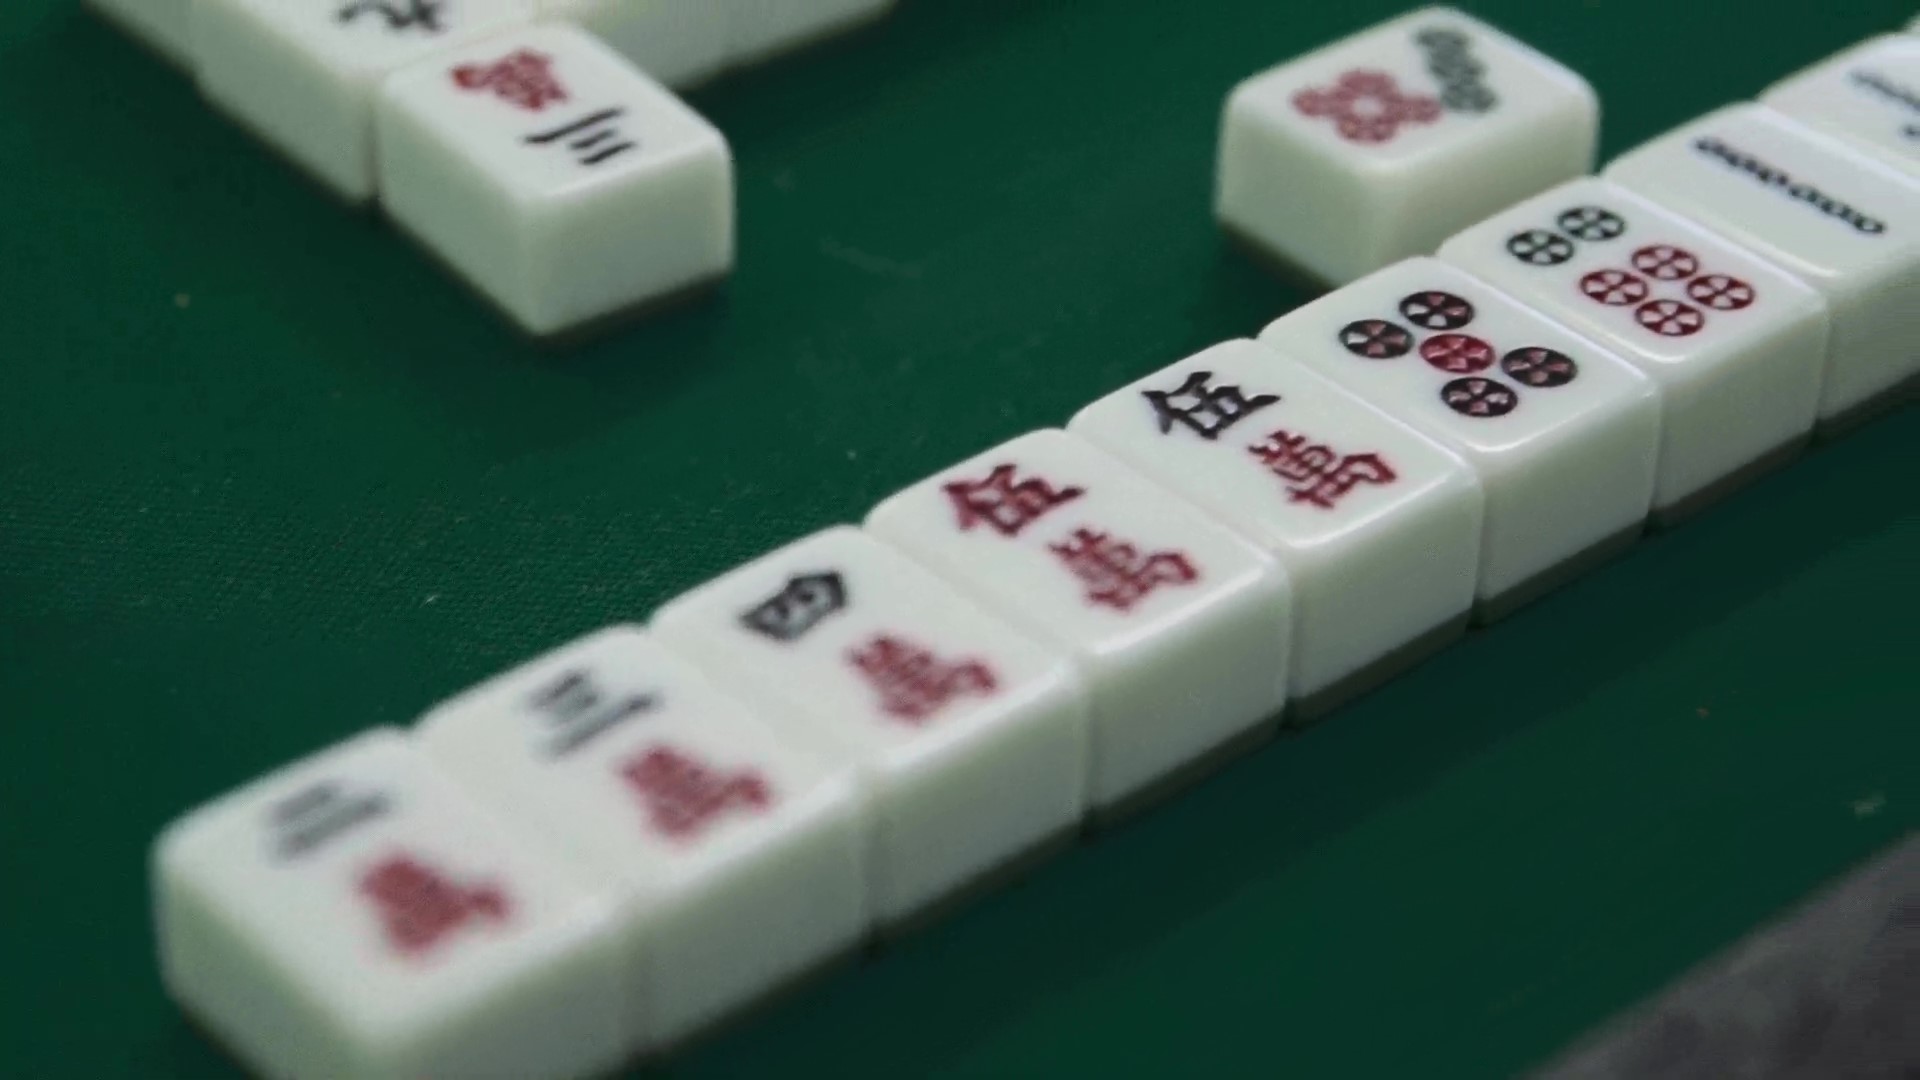 Jogos Mahjong - Jogue os jogos mais populares